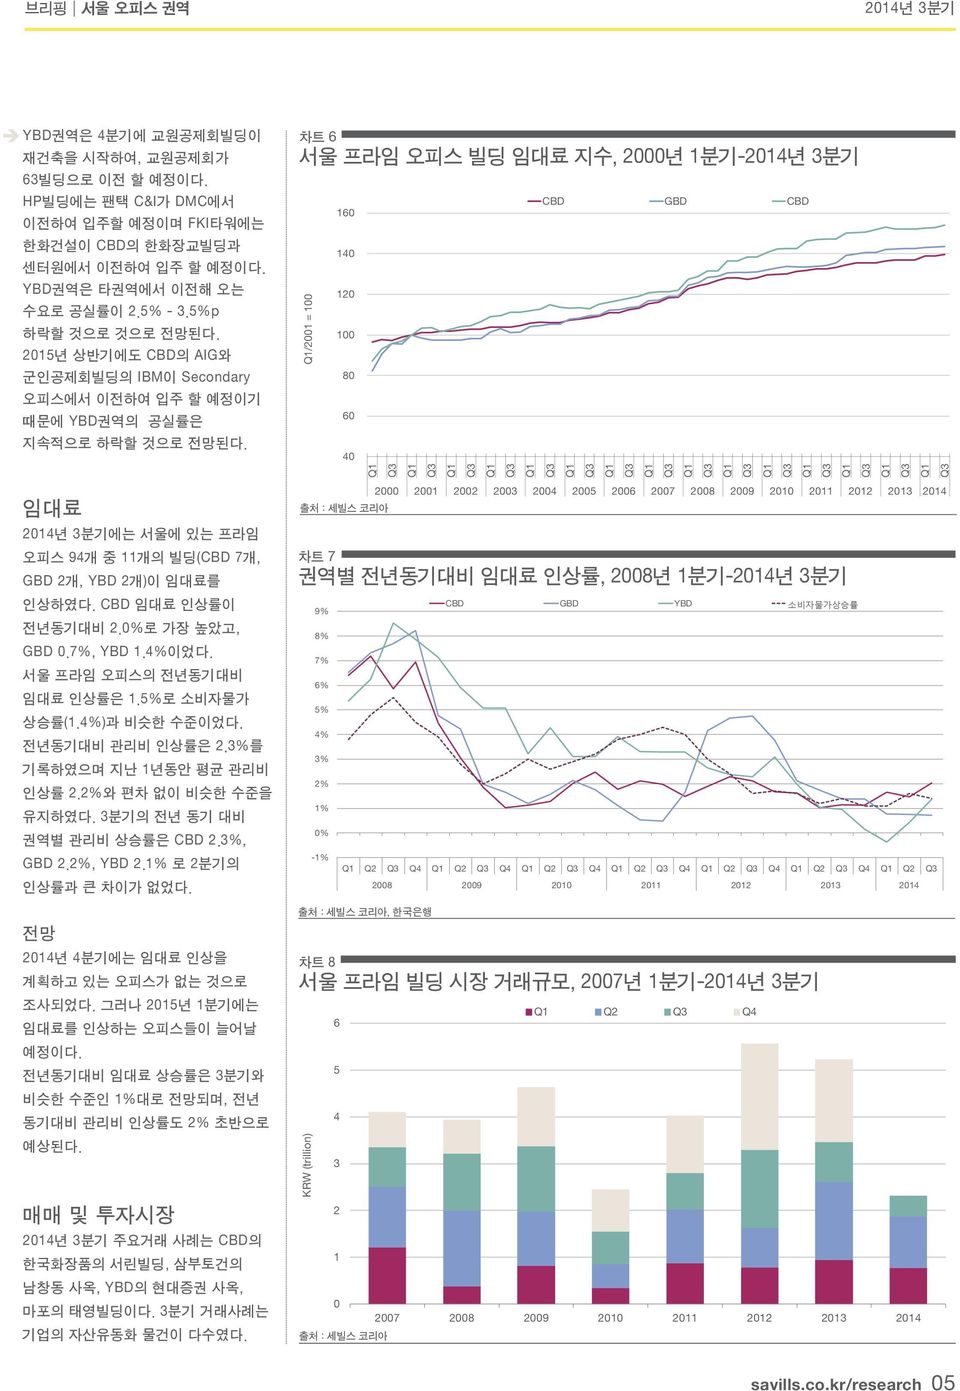 40 /2001 = 100 임대료 에는 서울에 있는 프라임 오피스 94개 중 11개의 빌딩( 7개, GBD 2개, YBD 2개)이 임대료를 인상하였다. 임대료 인상률이 전년동기대비 2.0%로 가장 높았고, GBD 0.7%, YBD 1.4%이었다. 서울 프라임 오피스의 전년동기대비 임대료 인상률은 1.5%로 소비자물가 상승률(1.4%)과 비슷한 수준이었다.